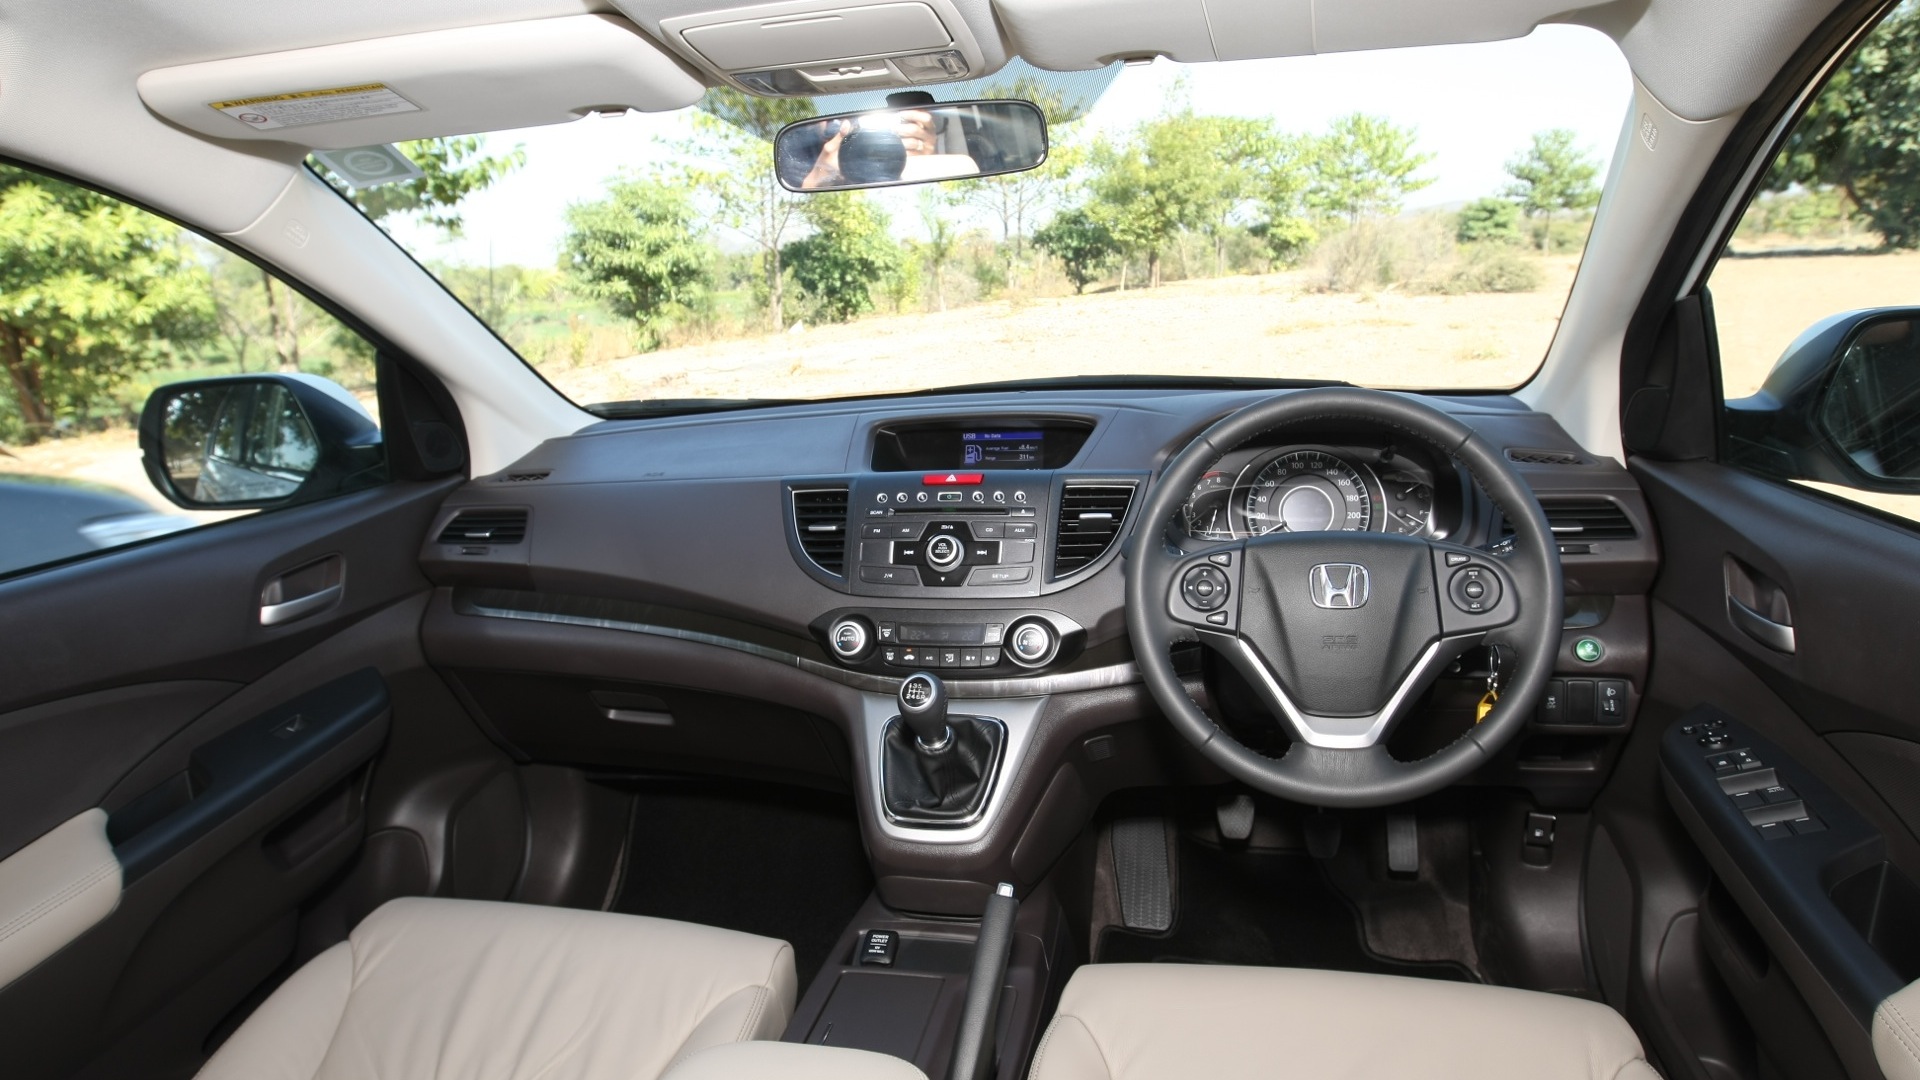 Honda-CRV-2013-CR-V-2-0-Interior